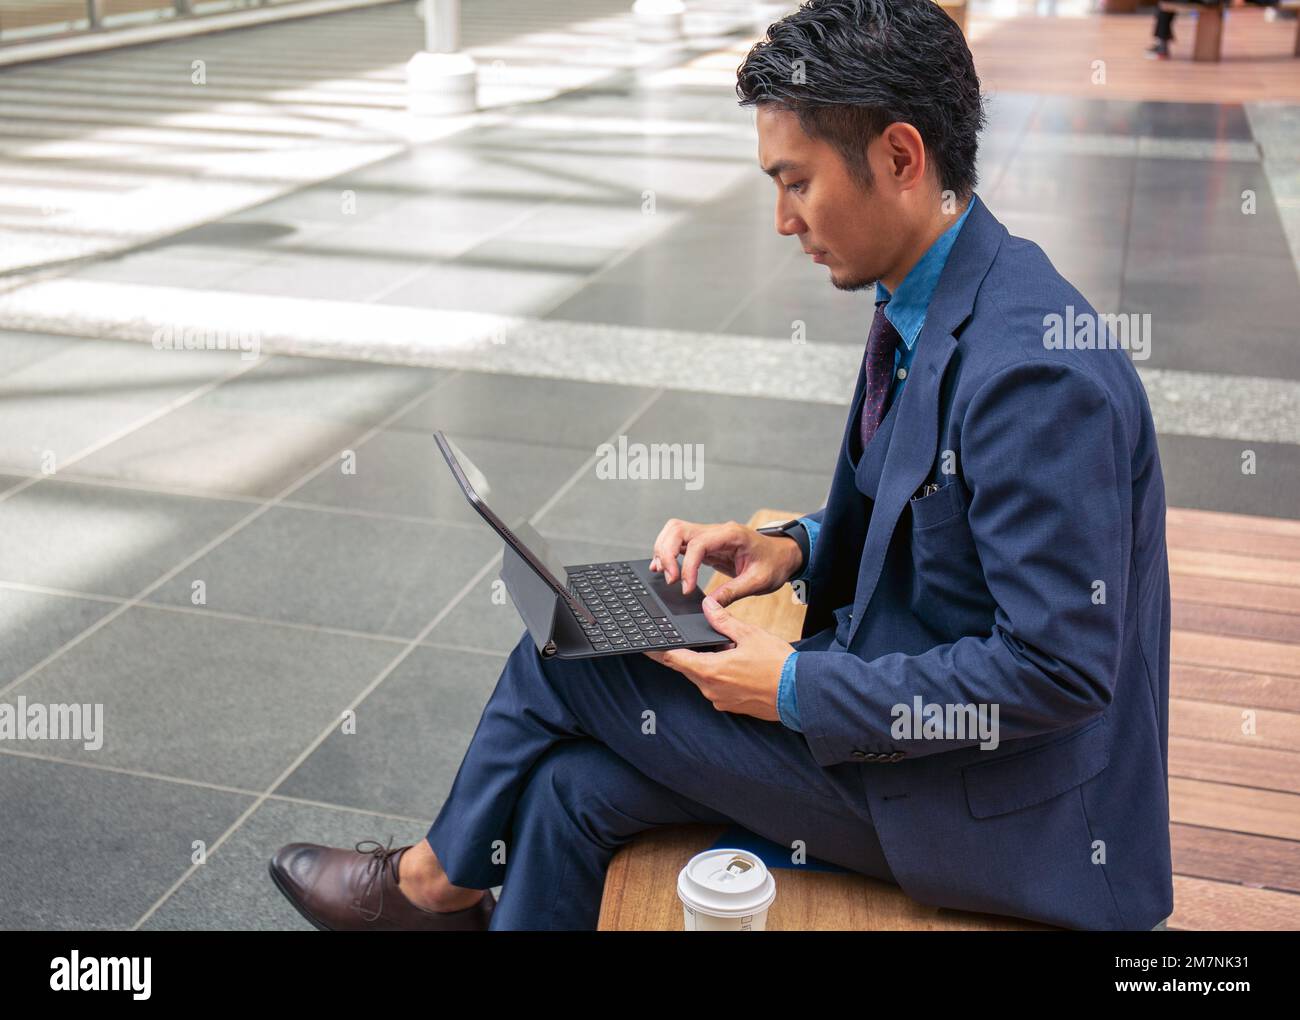 Ein junger Geschäftsmann in einem blauen Anzug, der unterwegs ist, in einer Innenstadt, sitzt auf einer Bank mit einem digitalen Tablet. Stockfoto